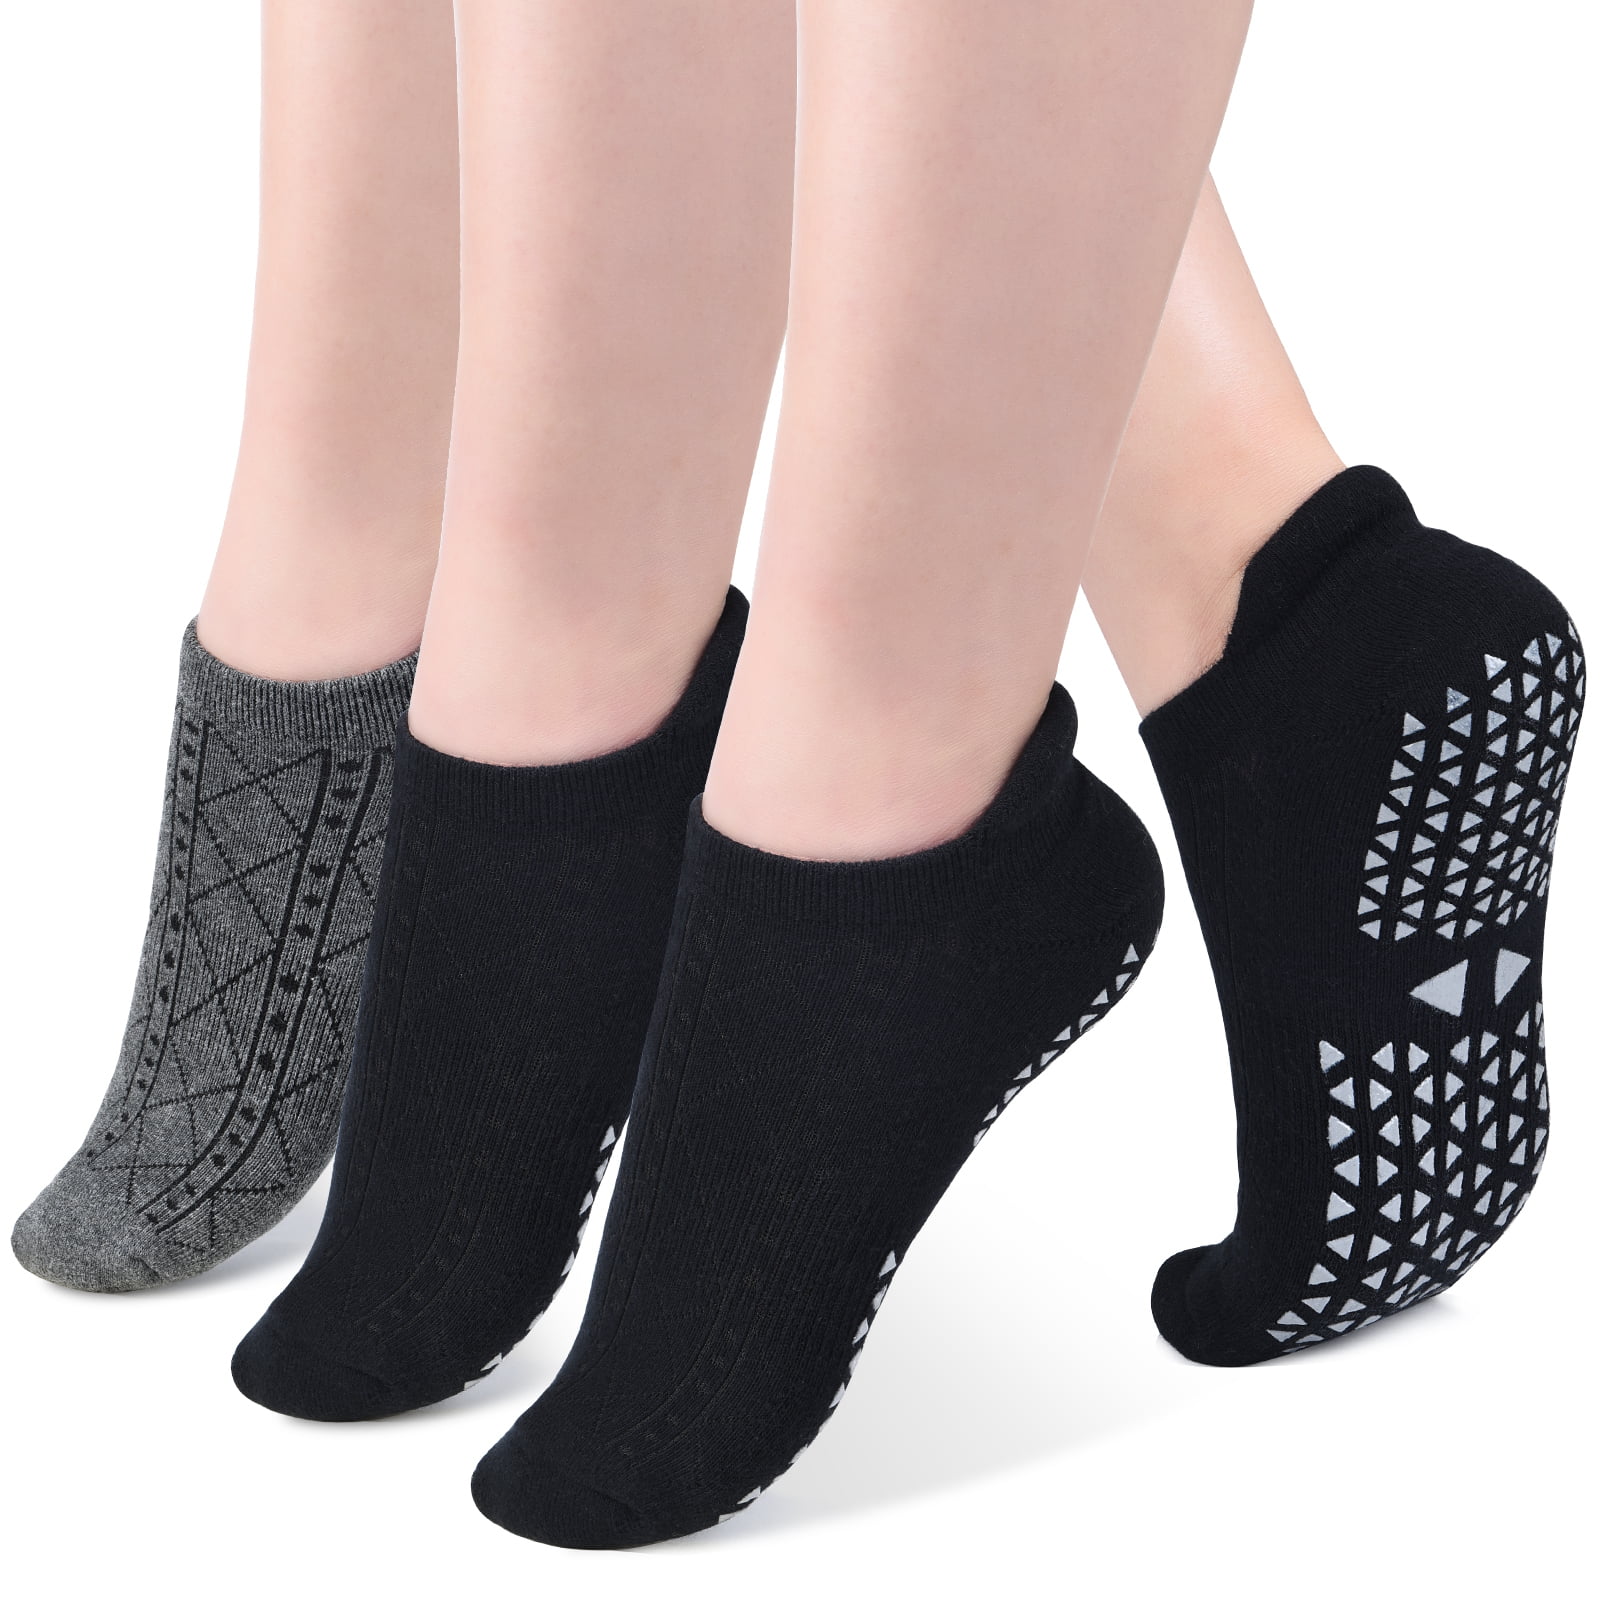 3 Pairs Yoga Grips Socks Antislip Sports Socks Gripper Socks Cotton Socks 